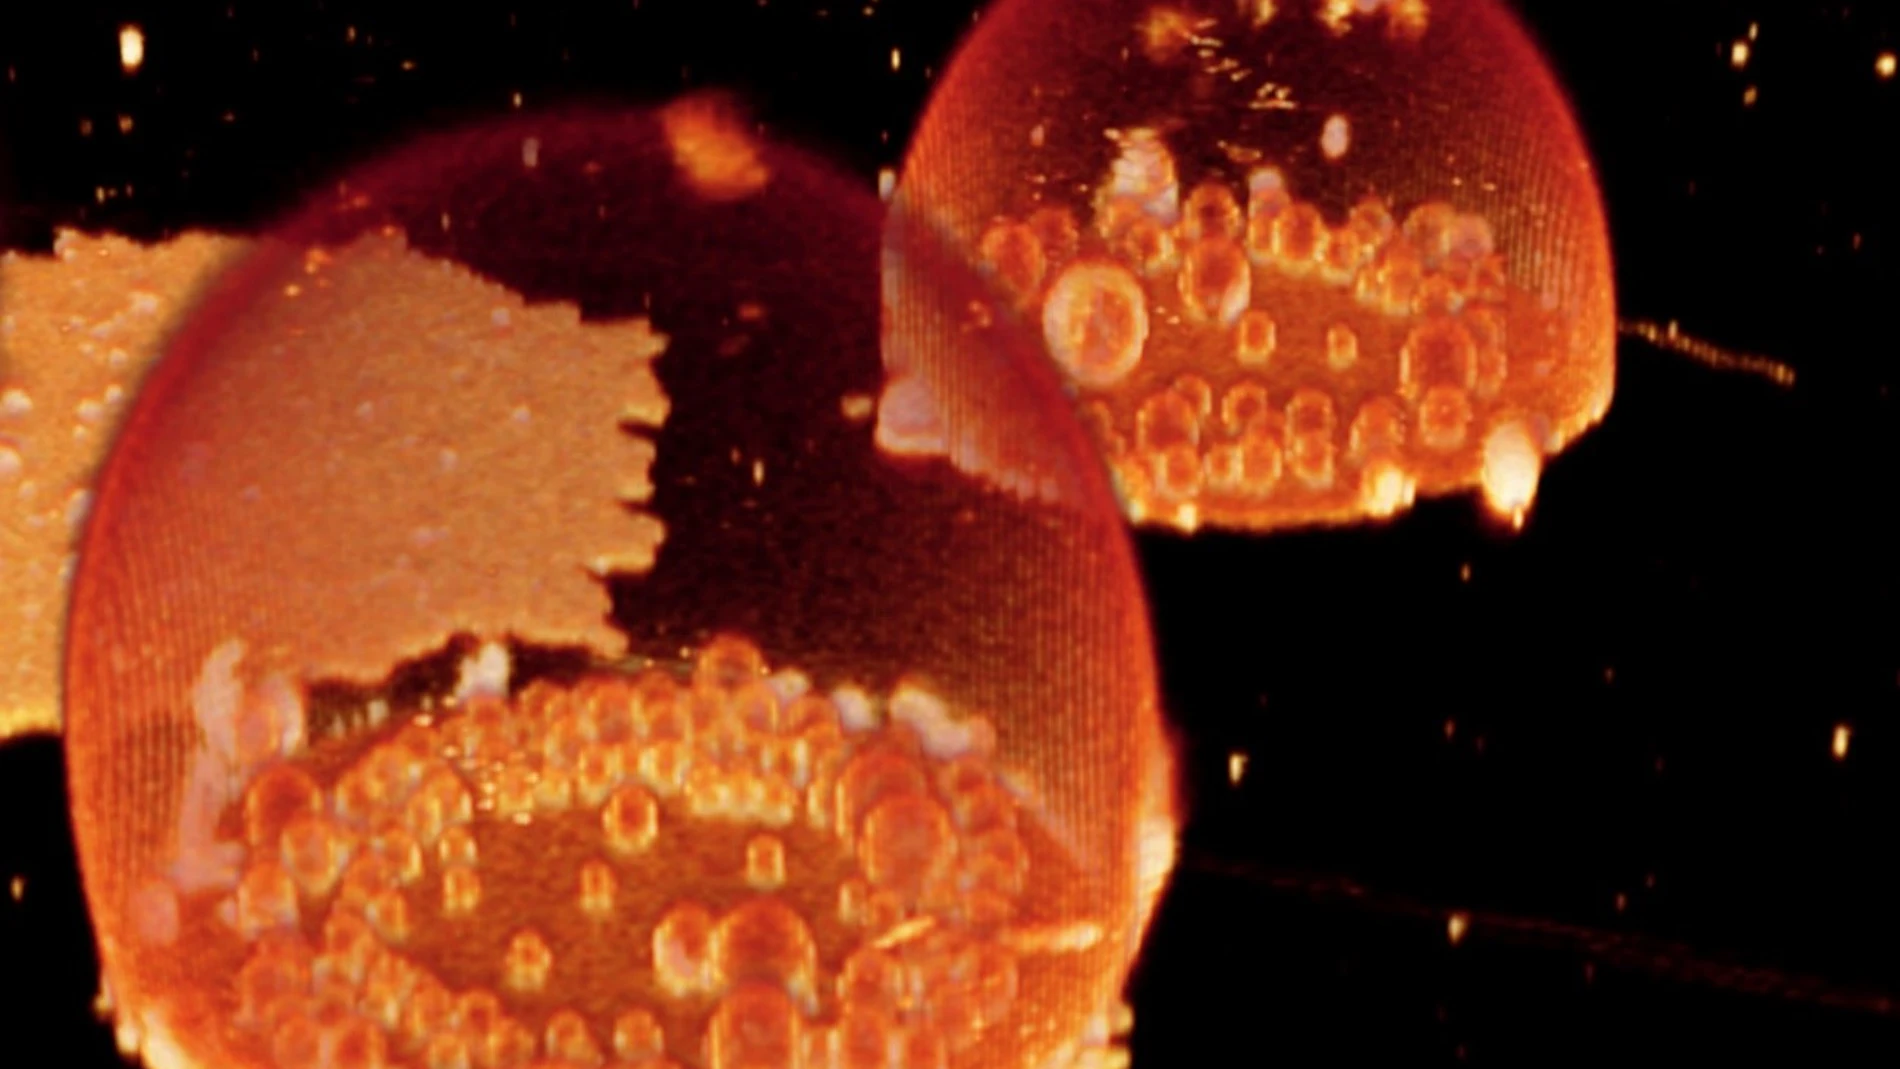 Protocélulas formadas espontáneamente en una tinción fluorescente. Puede verse en su interior una serie de compartimentos muy reveladores para entender la historia de la vida en la Tierra.